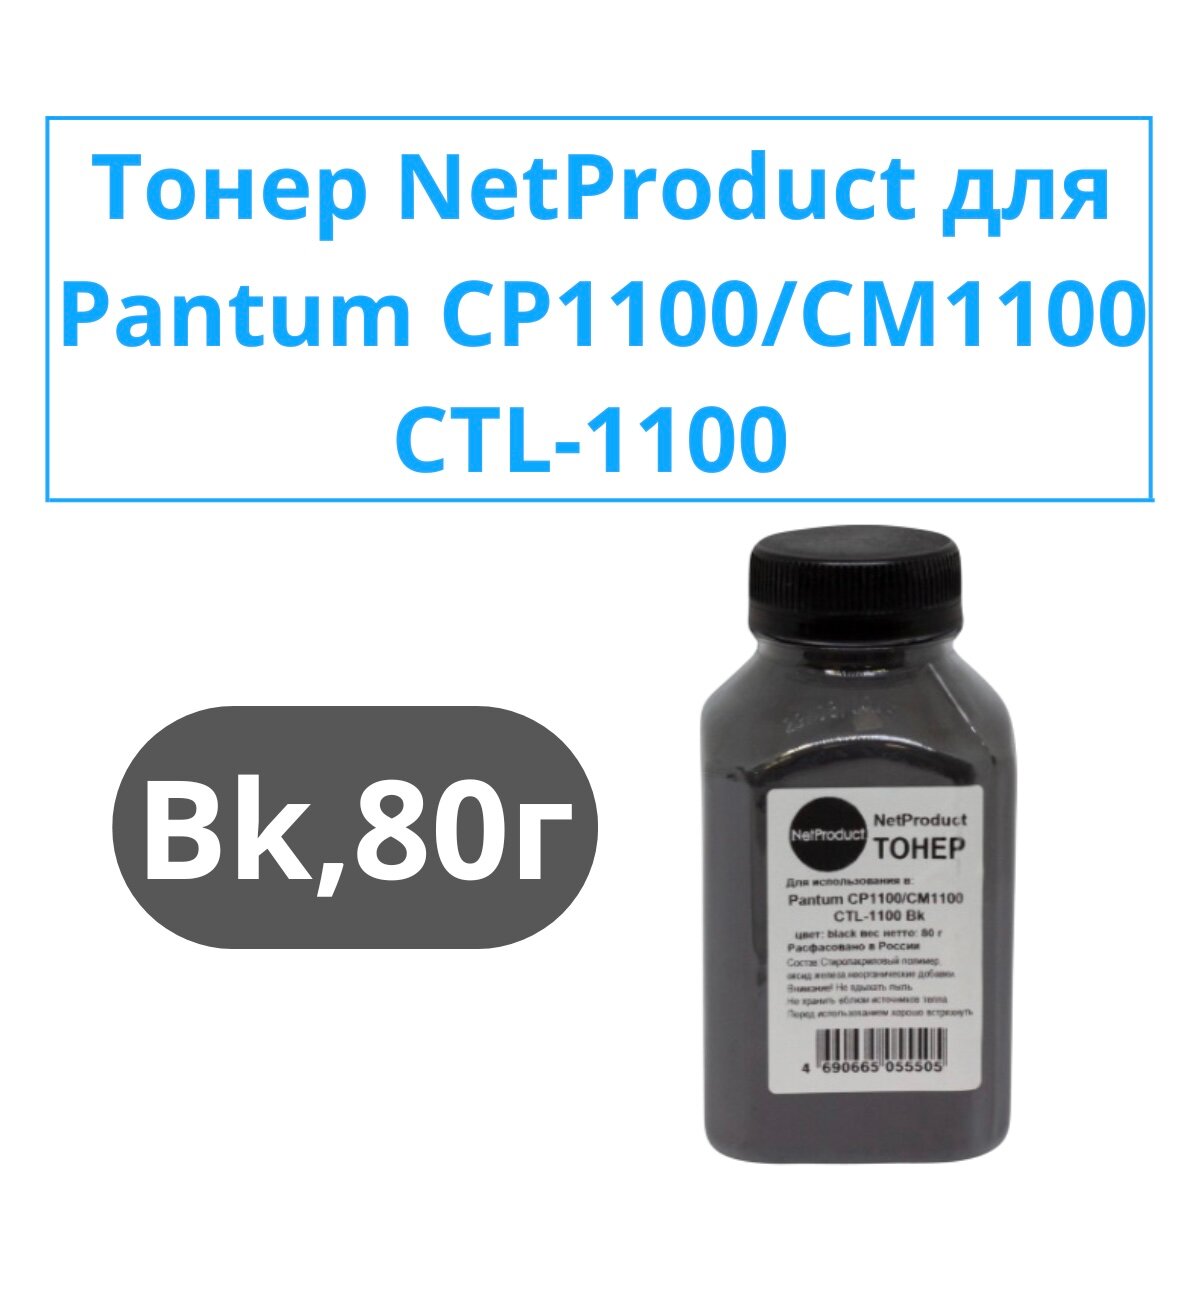 Тонер NetProduct для Pantum CP1100/CM1100 (CTL-1100) Bk 80 г банка